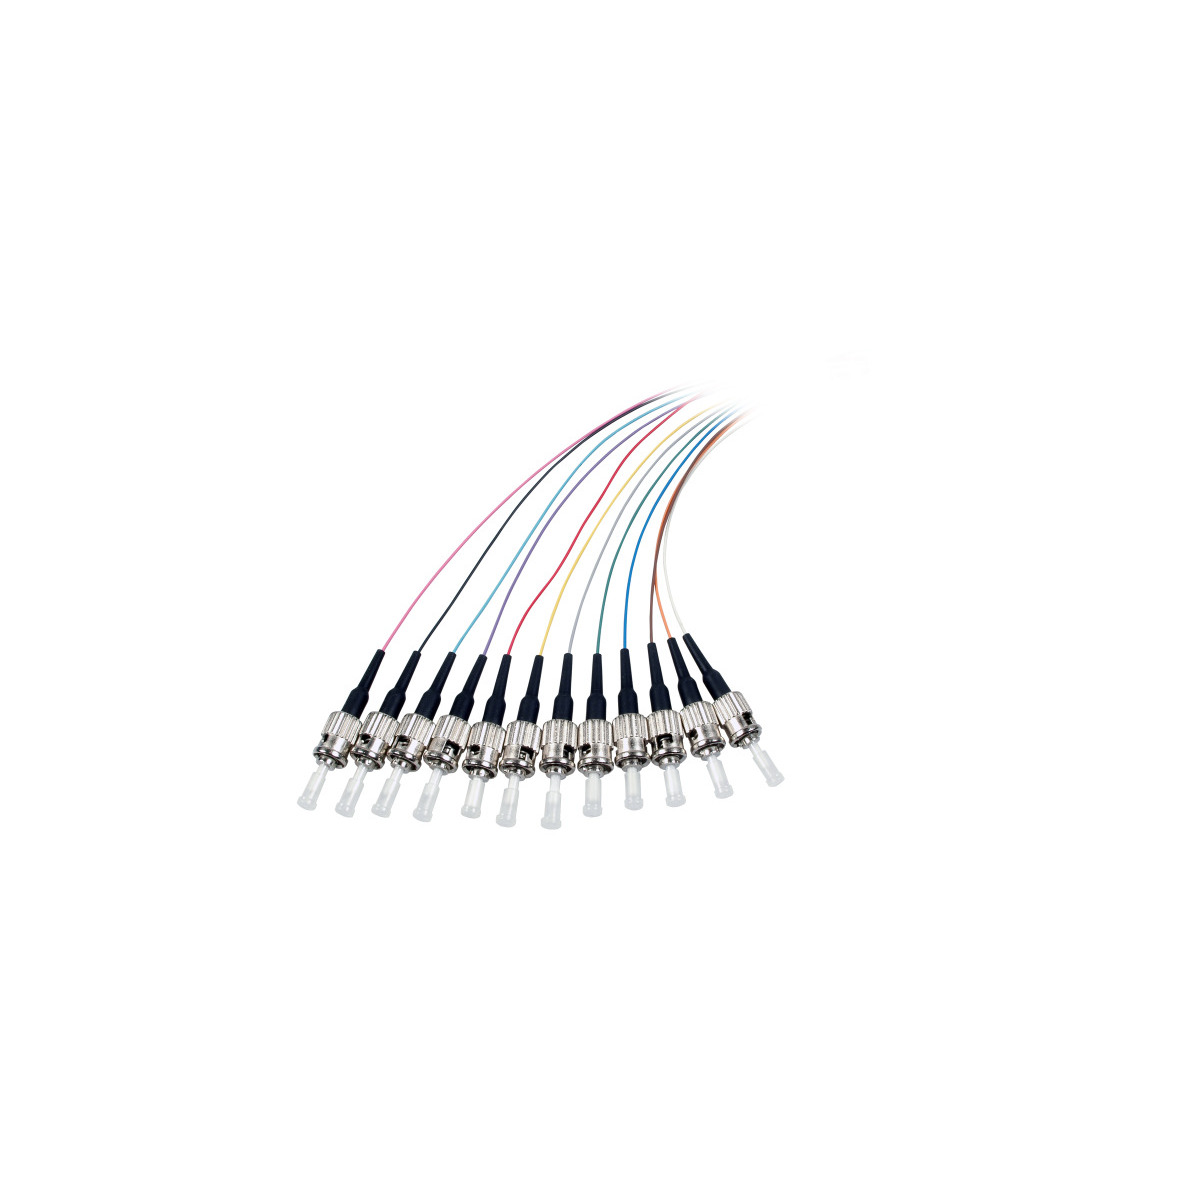 COMMUNIK Kabel Pigtails / ST 2 Faserpigtail, m Glasfaserkabel